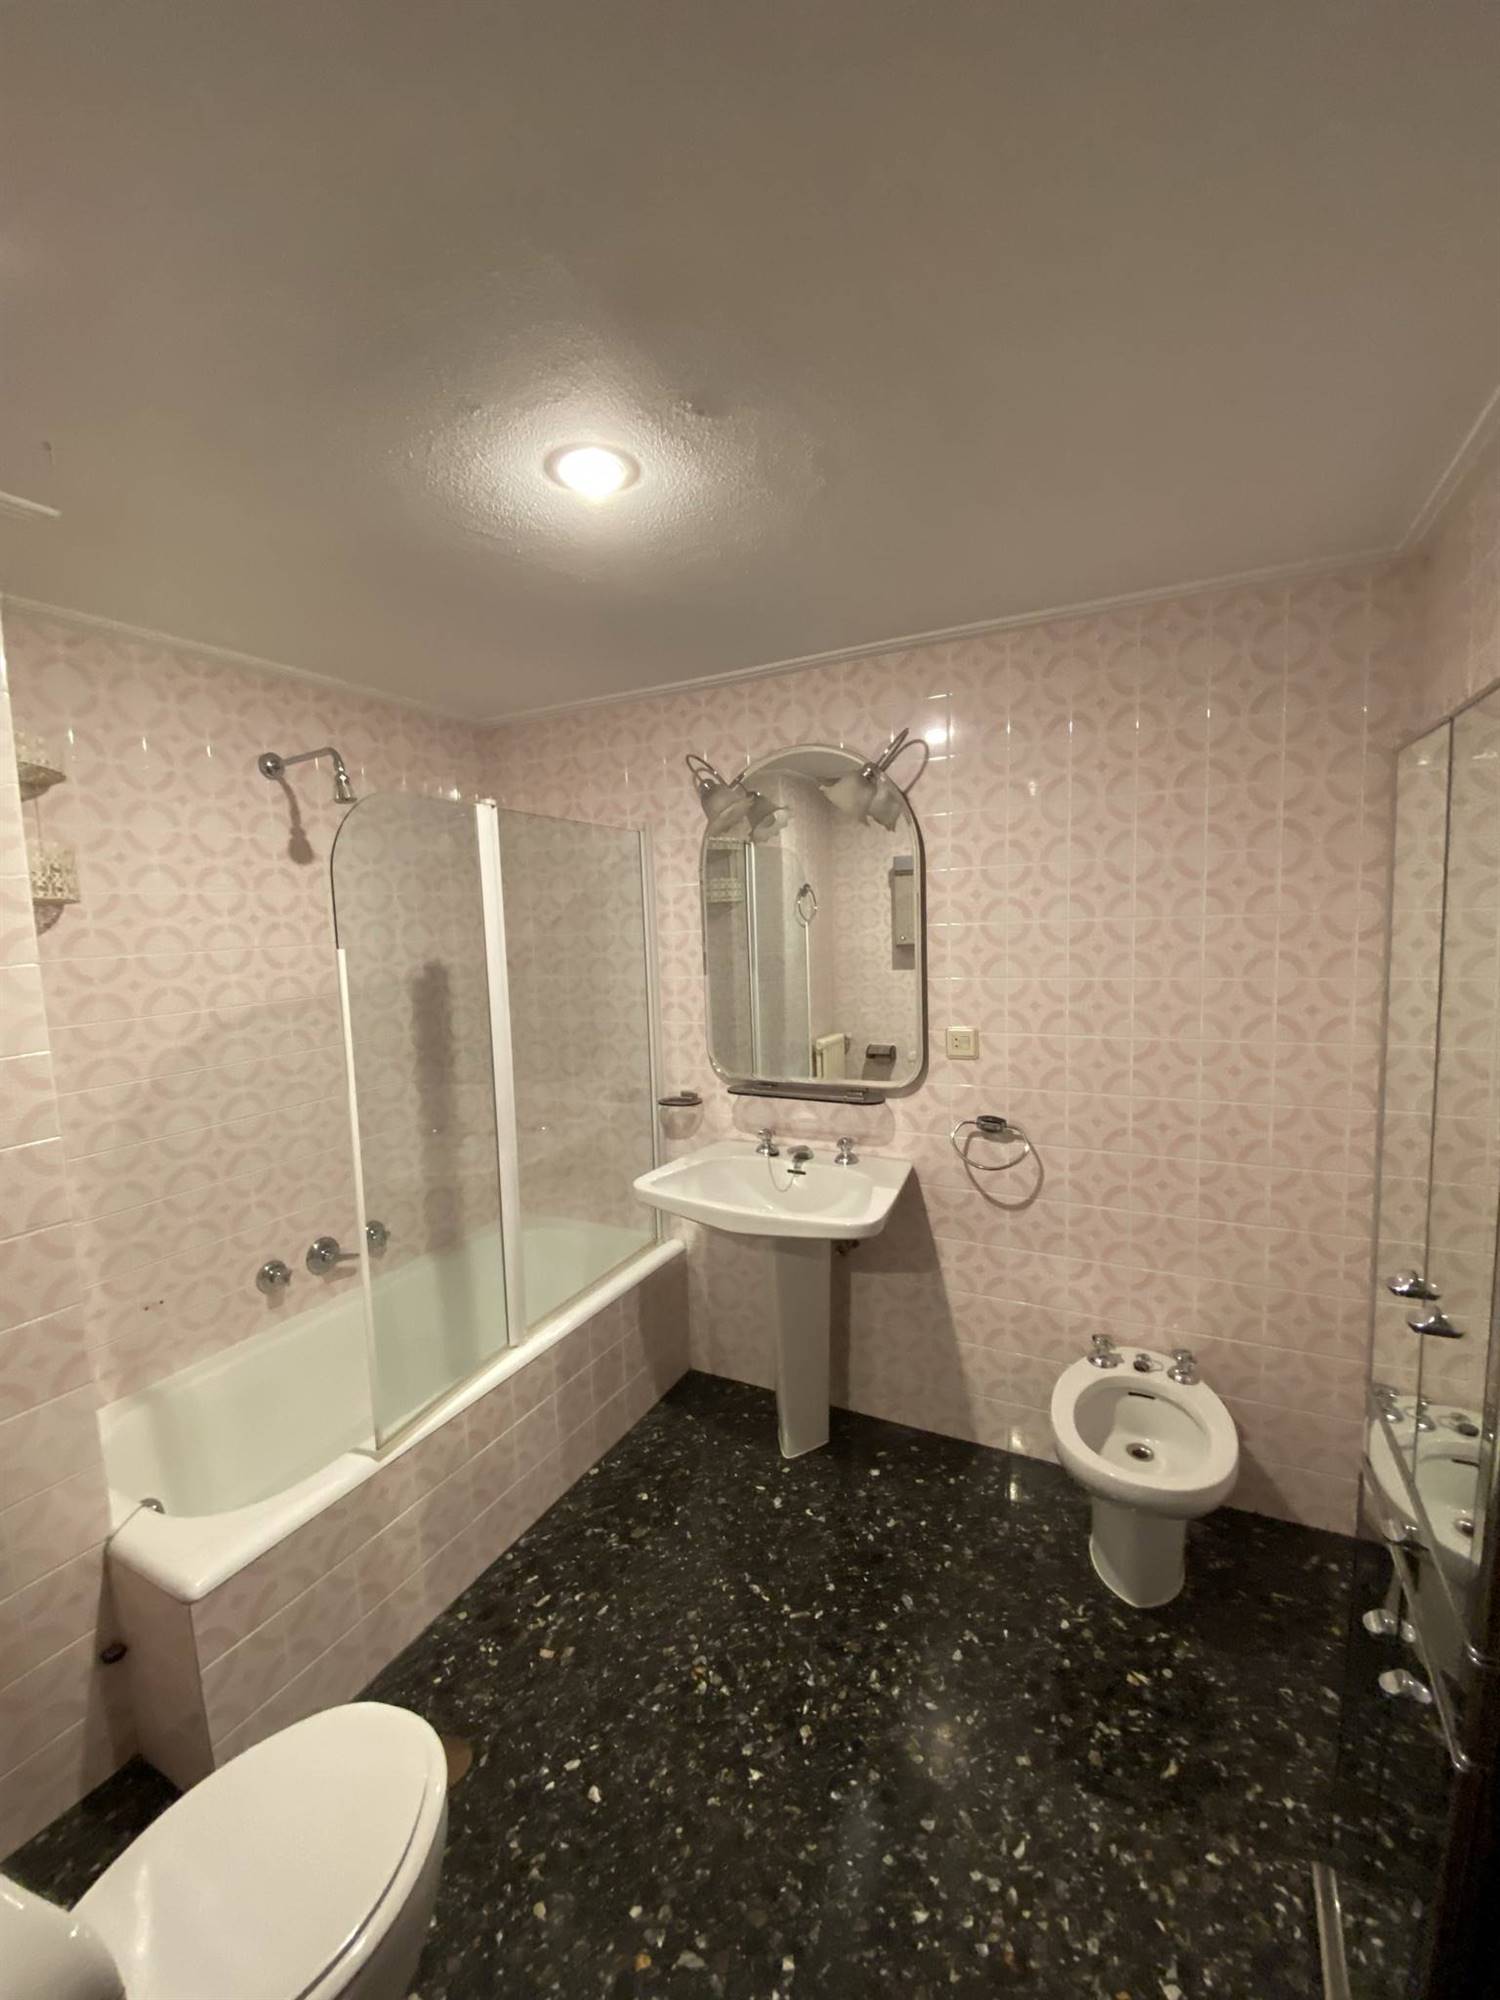 Un baño antiguo con azulejos en rosa y suelo negro tipo terrazo.